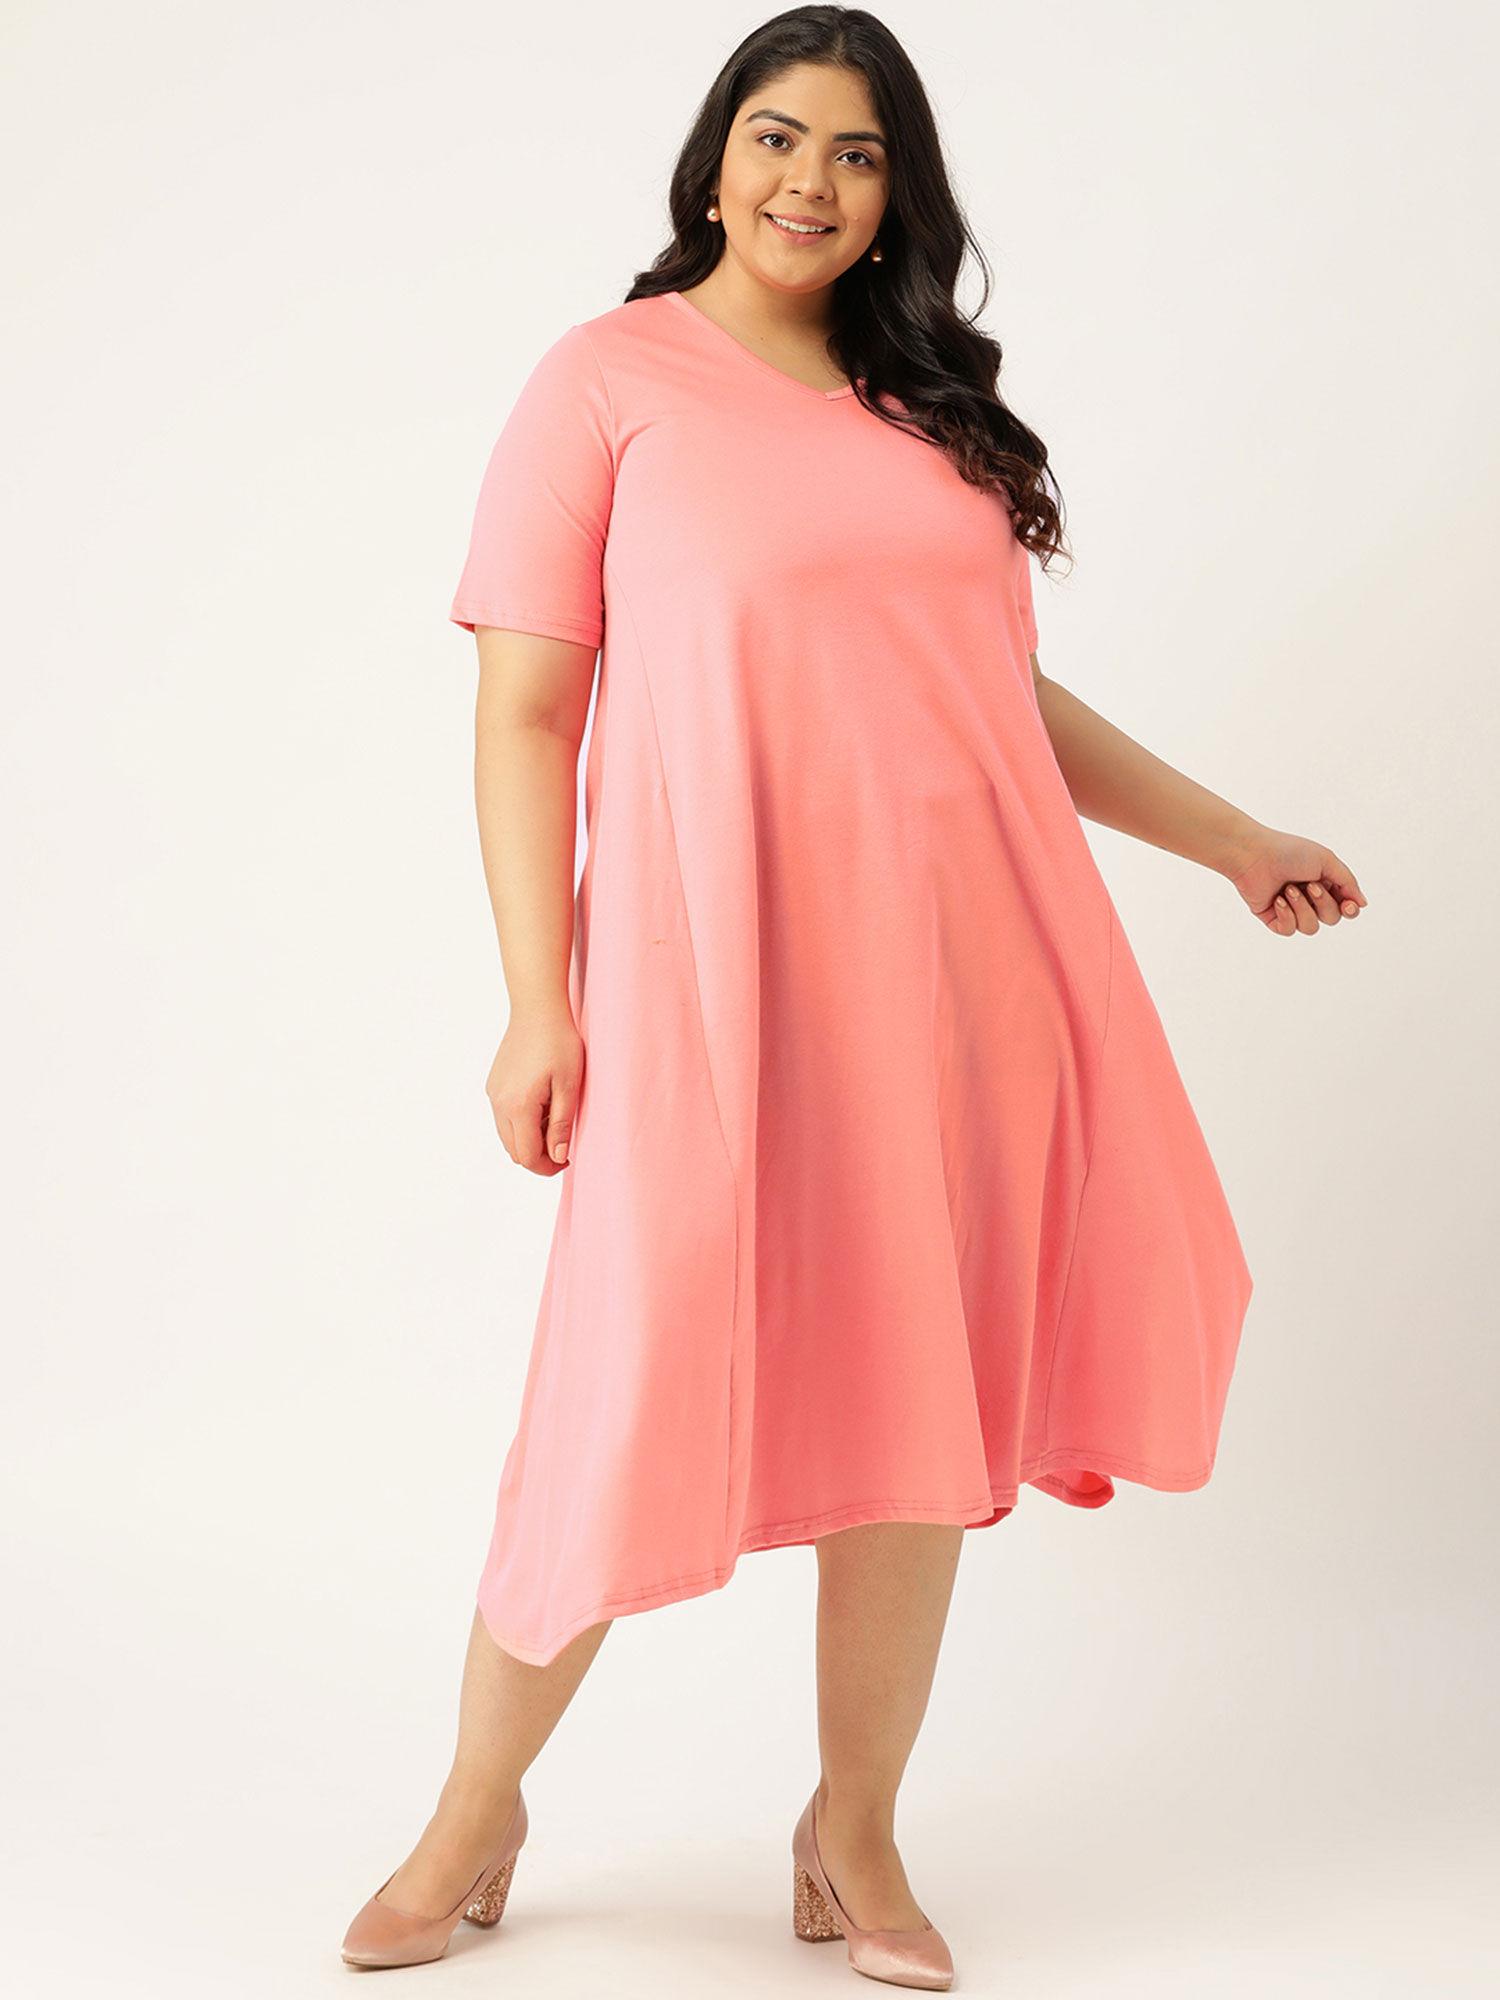 women's peach solid color v-neck cotton a-line dress